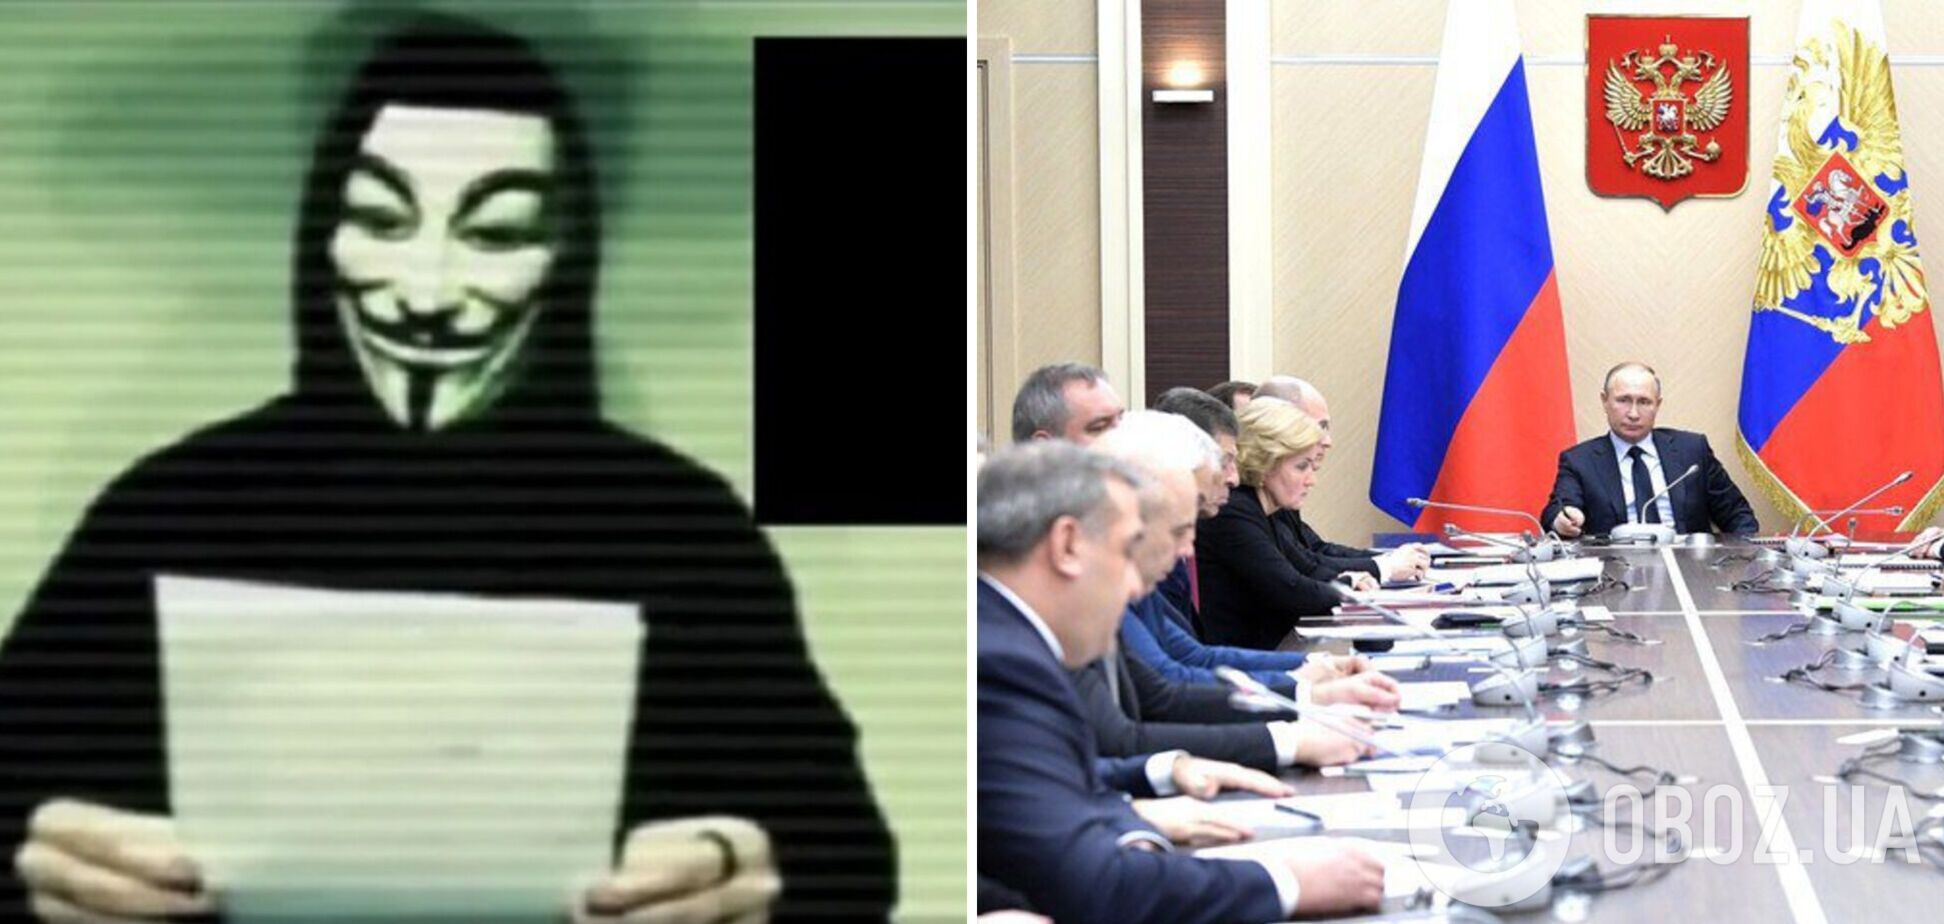 Хакерская группа Anonymous объявила кибервойну правительству России: уже не работают сайты